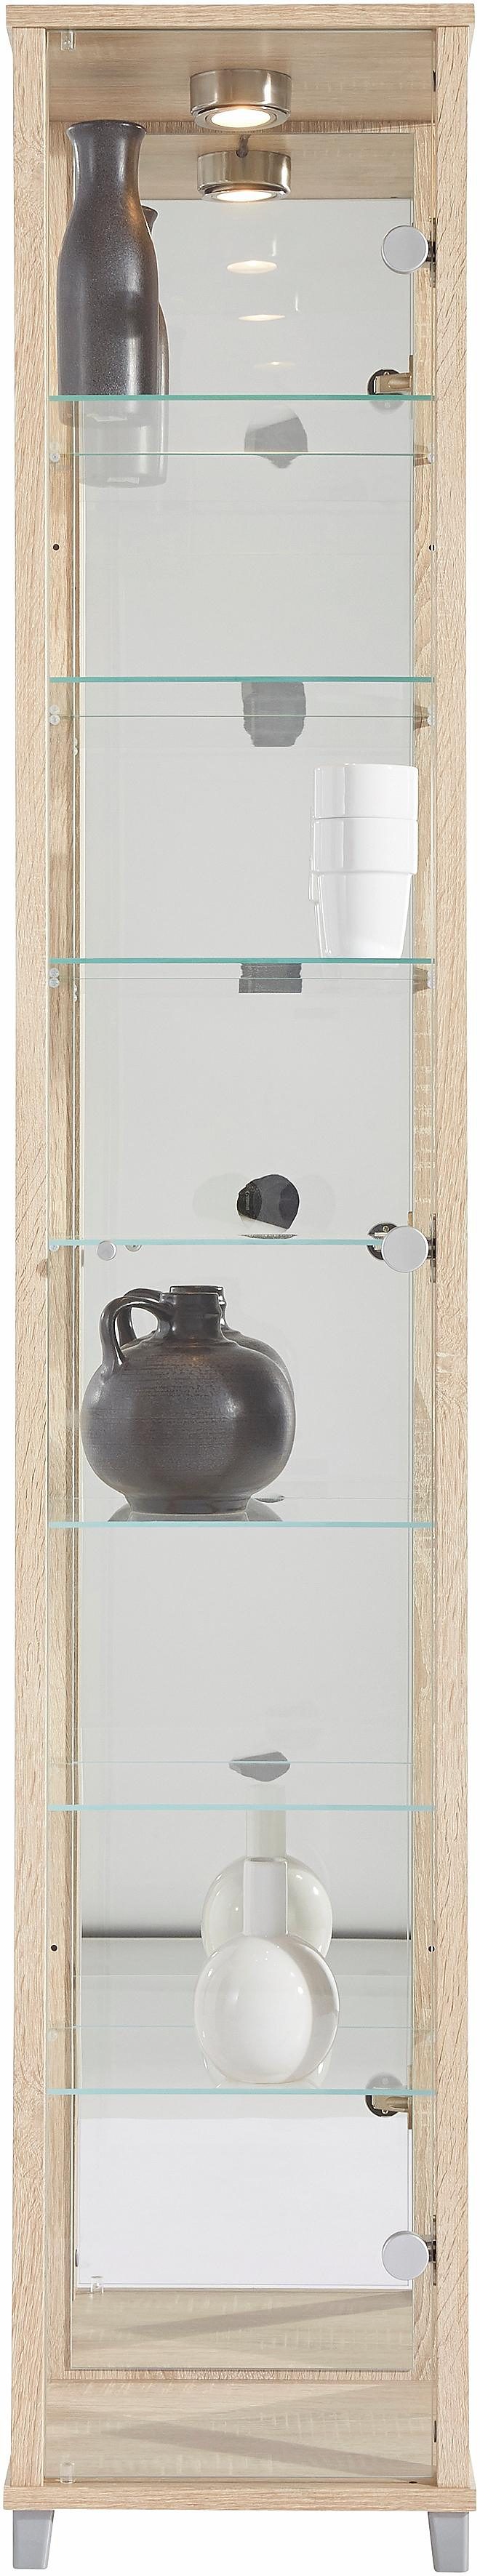 Kasten  vitrinekasten Vitrinekast met spiegelachterwand  7 glasplateaus 297681